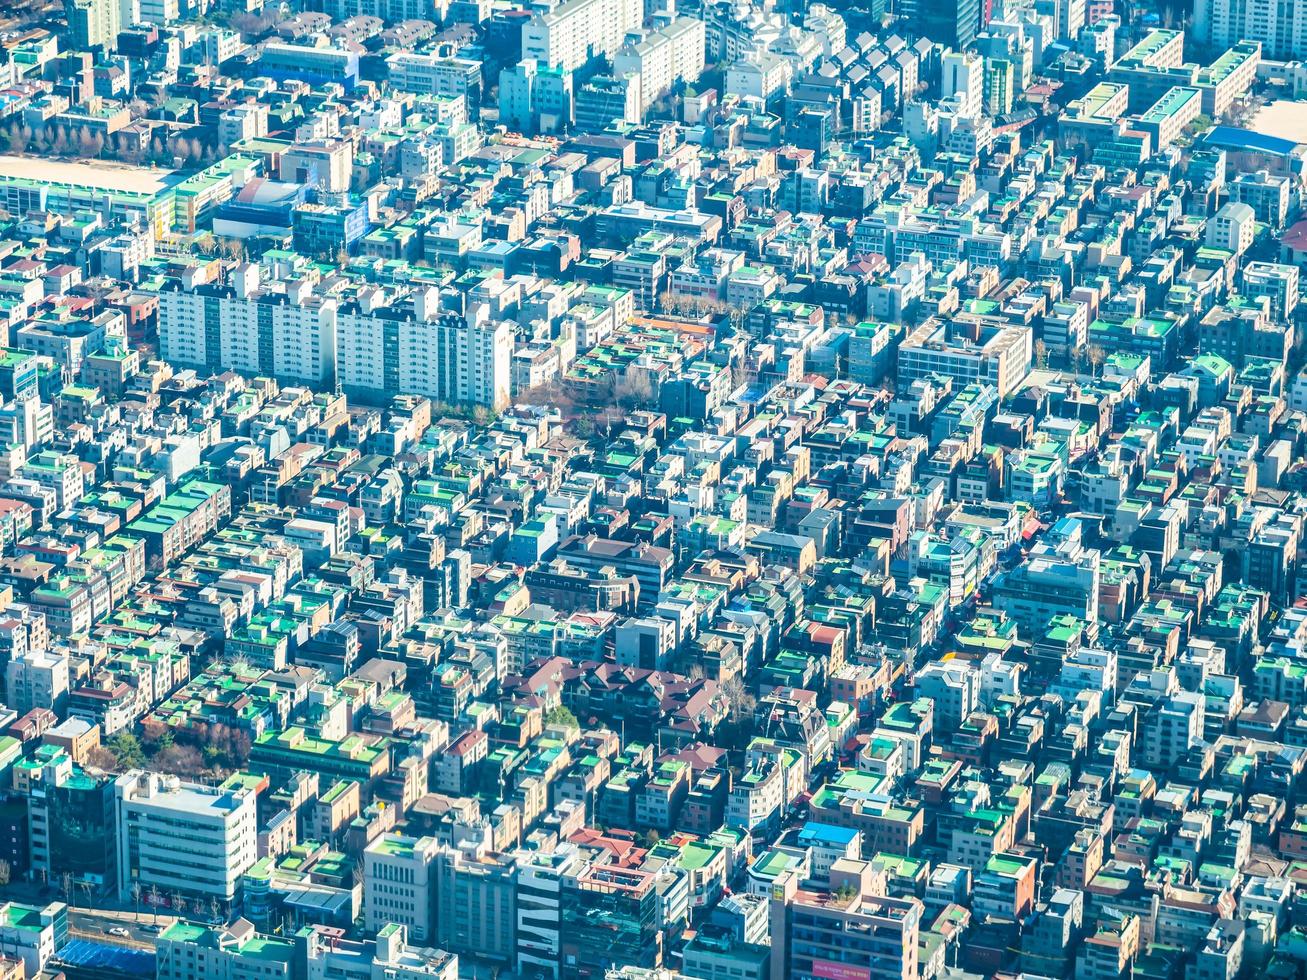 vista aérea de la ciudad de seúl, corea del sur foto